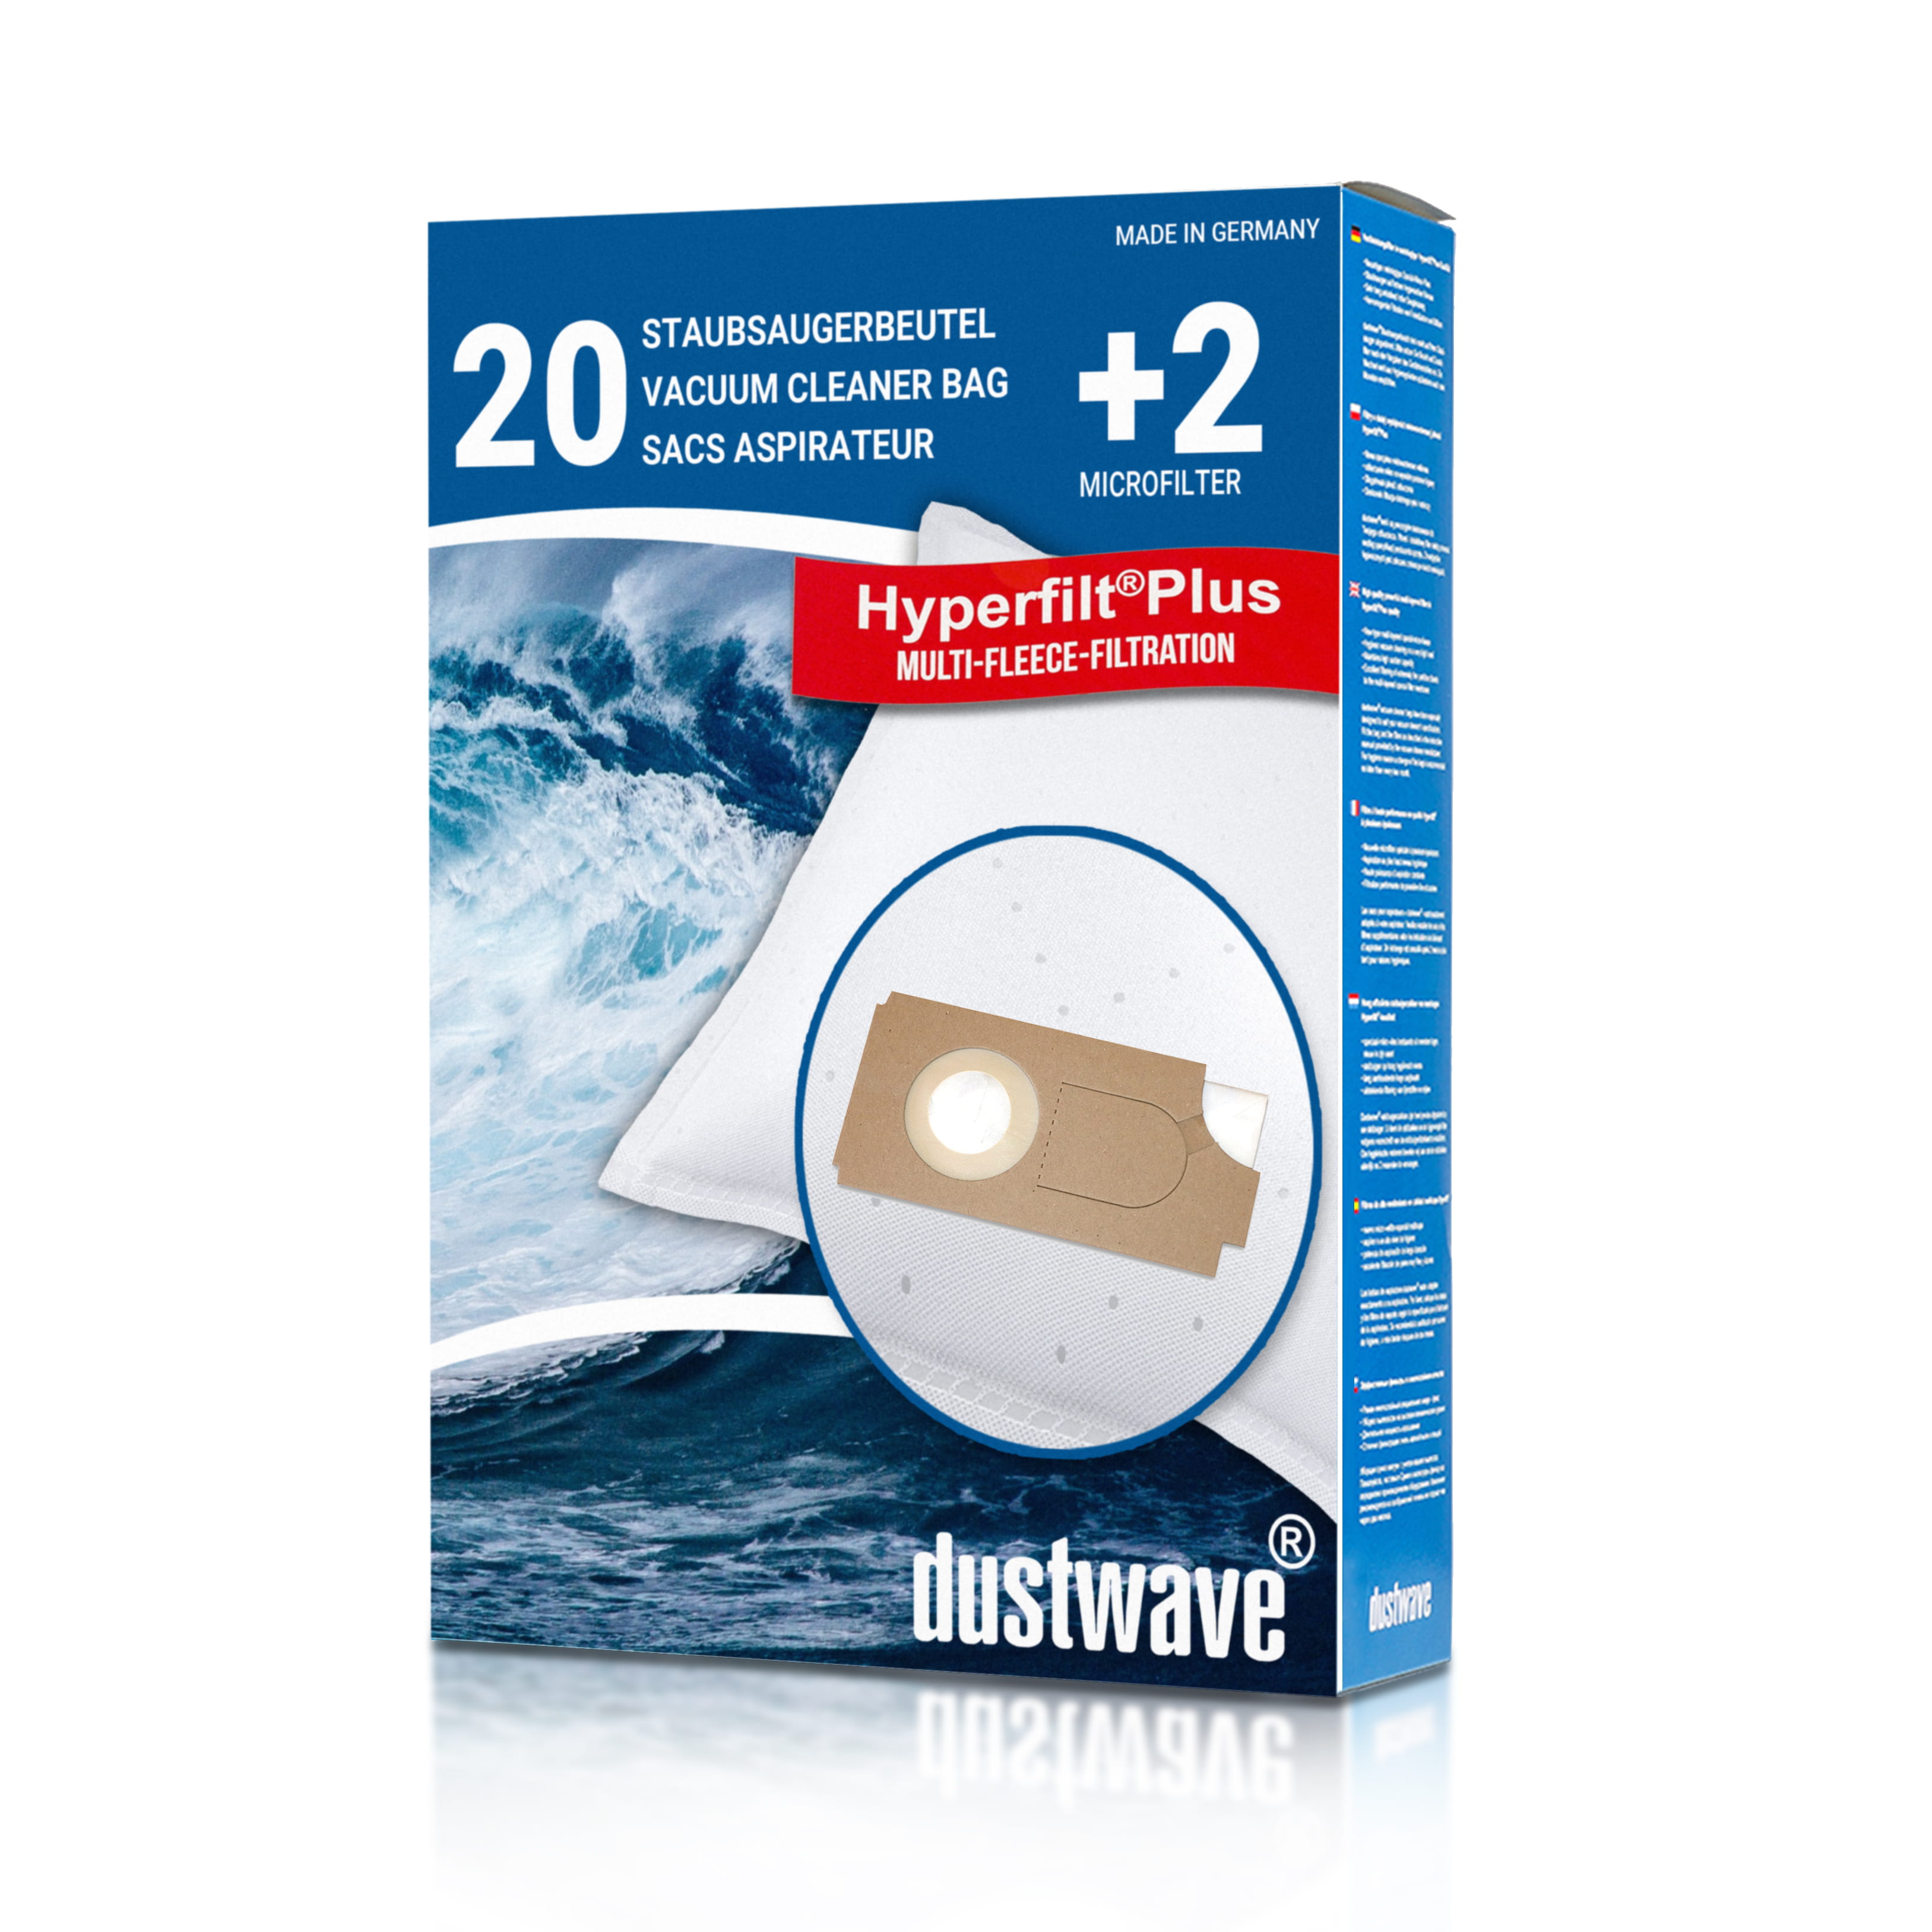 Dustwave® 20 Staubsaugerbeutel für Columbus TK 25 / TK25 - hocheffizient mit Hygieneverschluss - Made in Germany